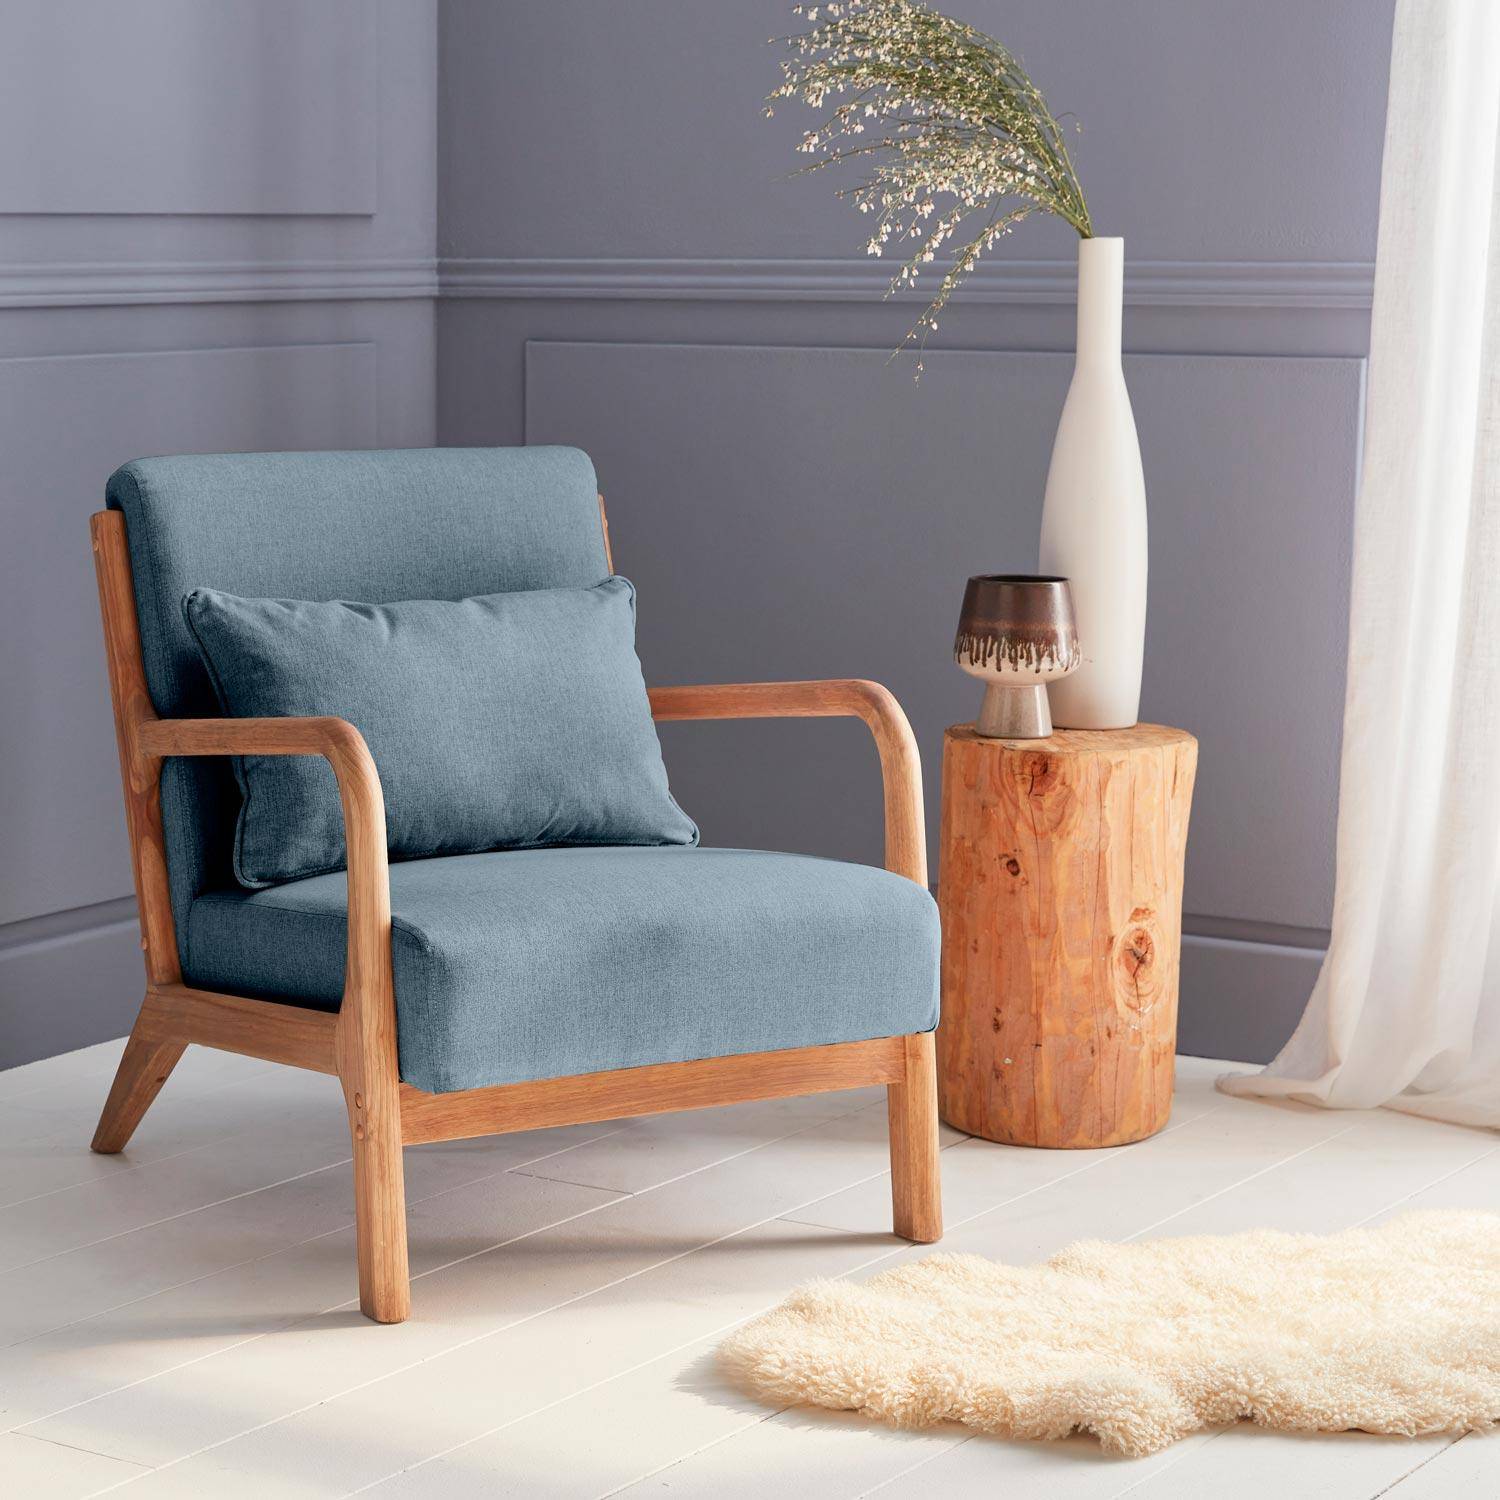 Sillón de diseño en madera y tela, 1 asiento recto fijo, patas de compás escandinavas, asiento cómodo, armazón de madera maciza, azul,sweeek,Photo1